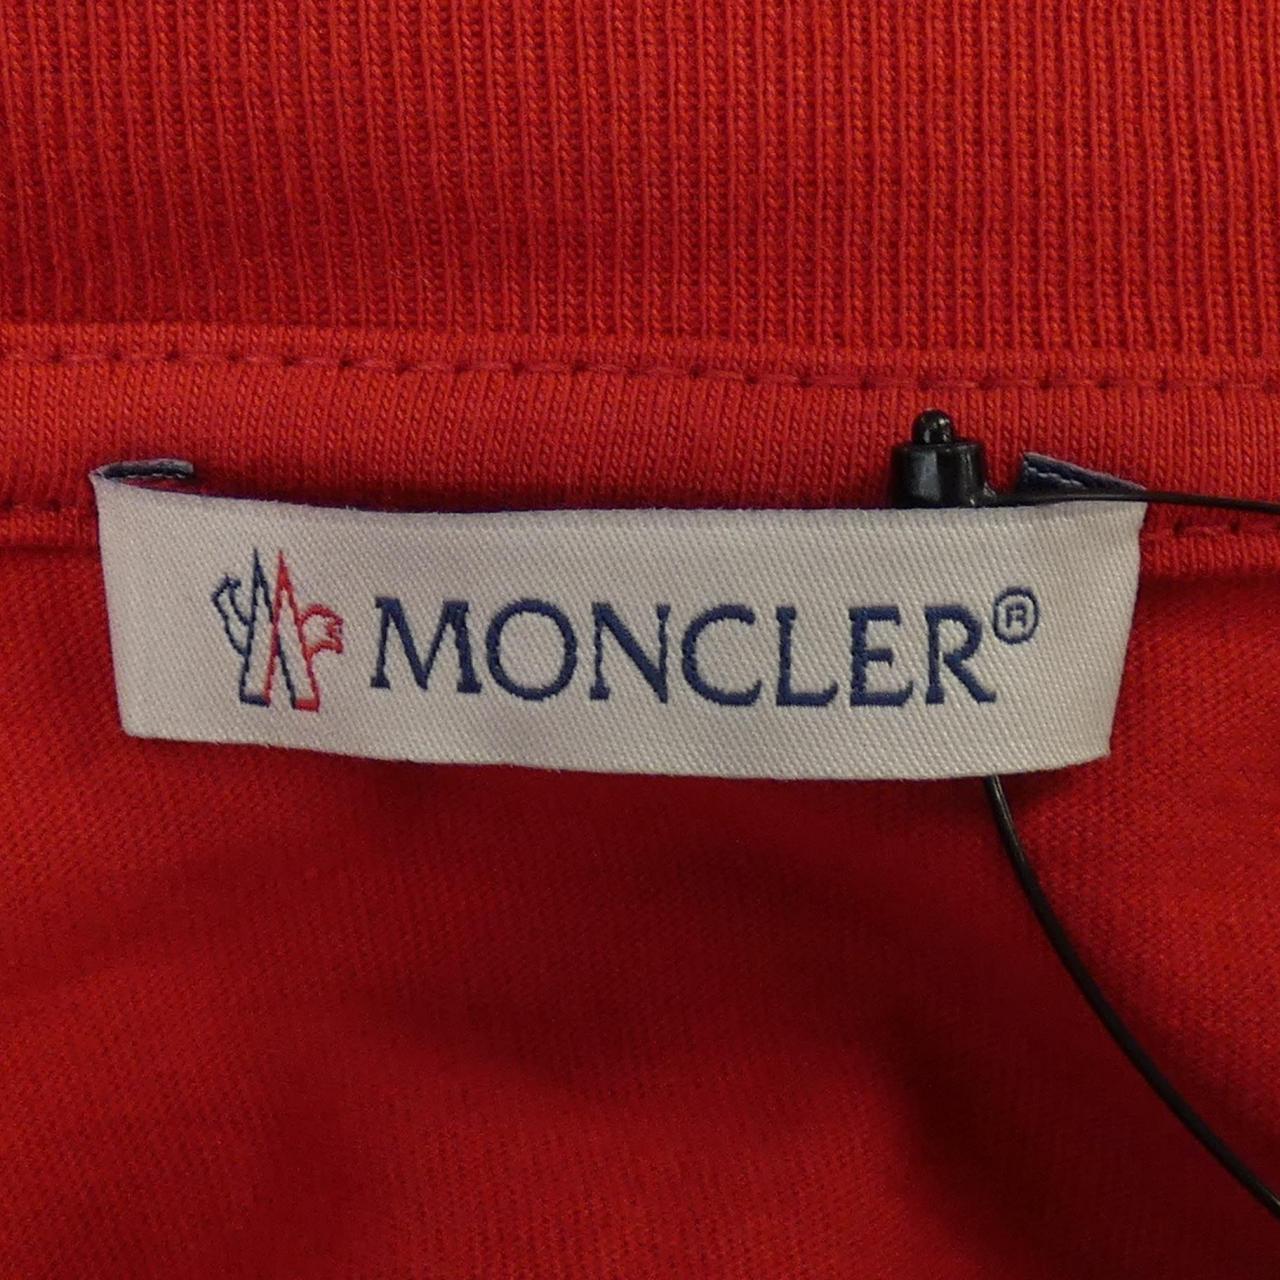 盟MONCLER) Genius 盟可睐 (Moncler) Genius T 恤